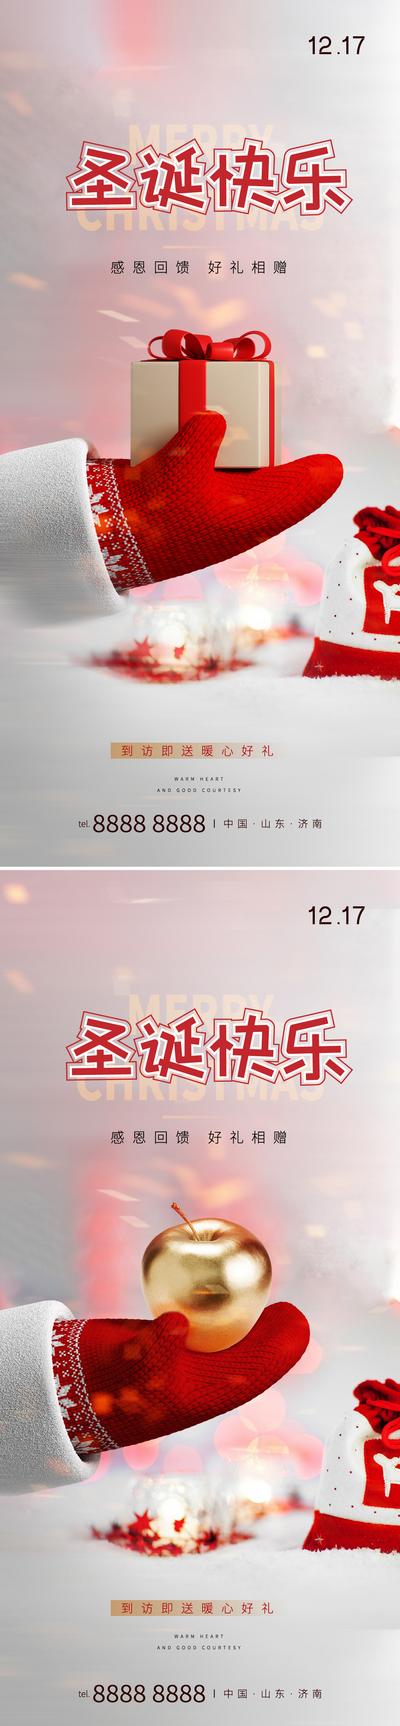 南门网 海报 房地产 公历节日 圣诞节 系列